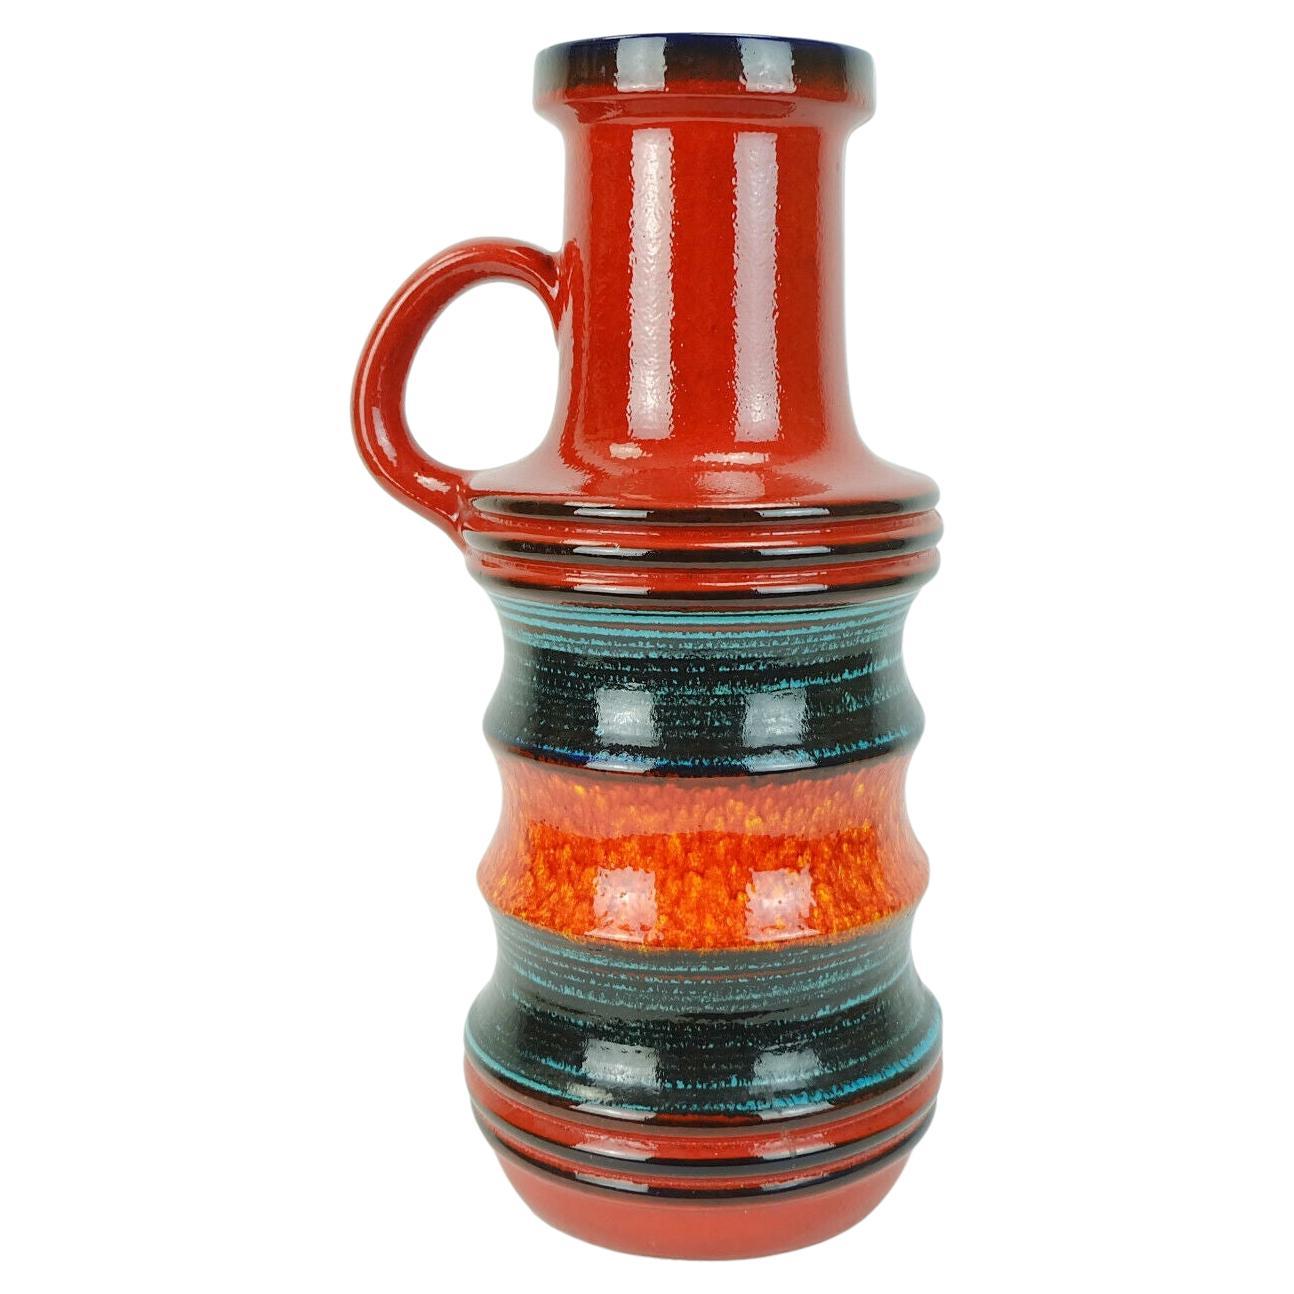 large scheurich ceramic floorvase model 427-47 stripe pattern red orange black For Sale